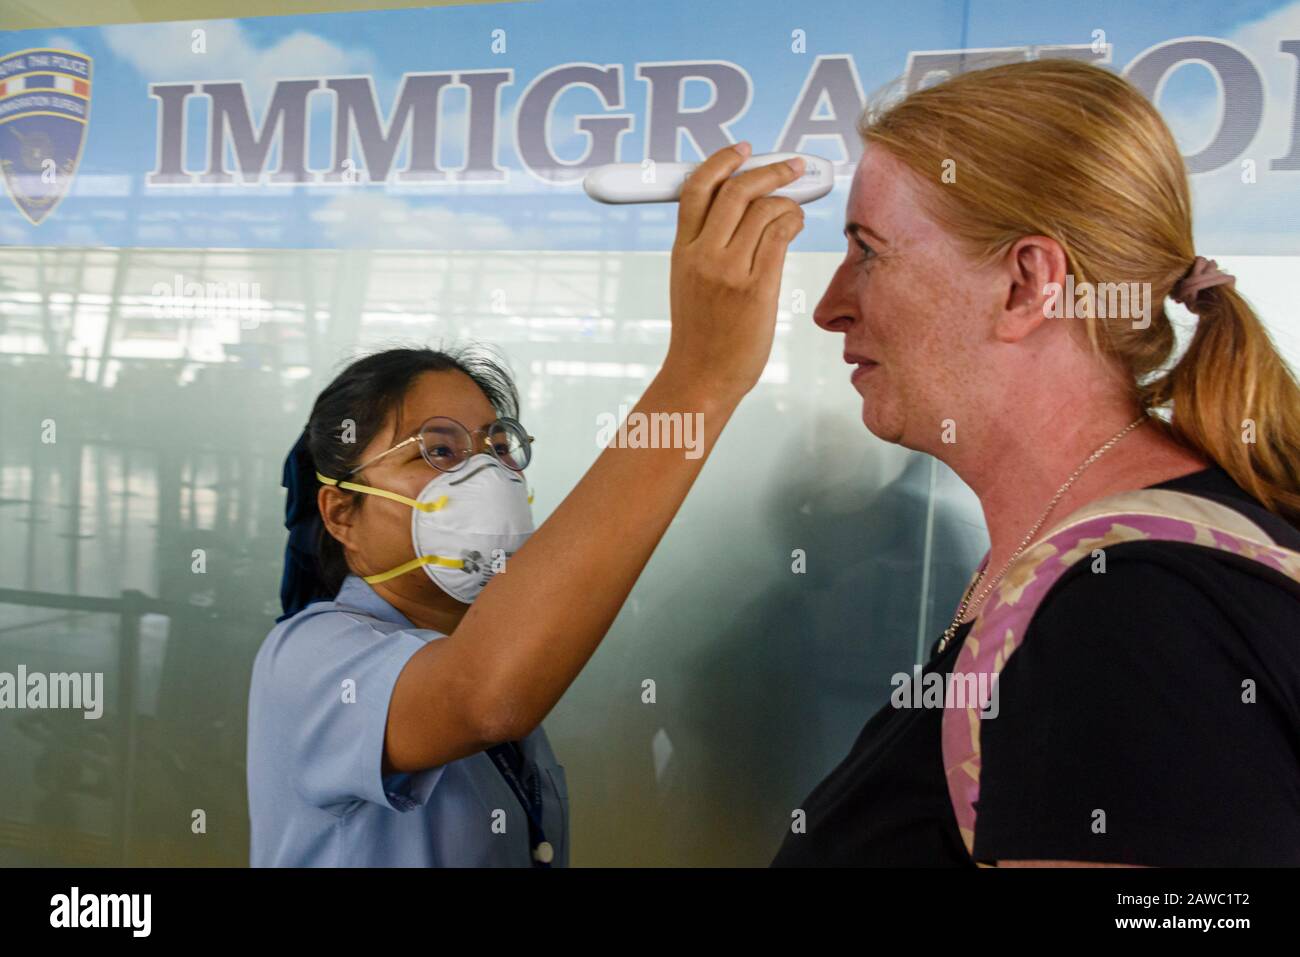 Aeropuerto De Phuket, Tailandia. 31 De Enero De 2020. Un miembro del personal de seguridad lleva una máscara quirúrgica mientras examina a los pasajeros con un termómetro frente, en un intento de prevenir la propagación de 2019-nCoV COVID-19 COVID 2019 nCoV Coronavirus Corona virus durante la epidemia actual. Foto de stock